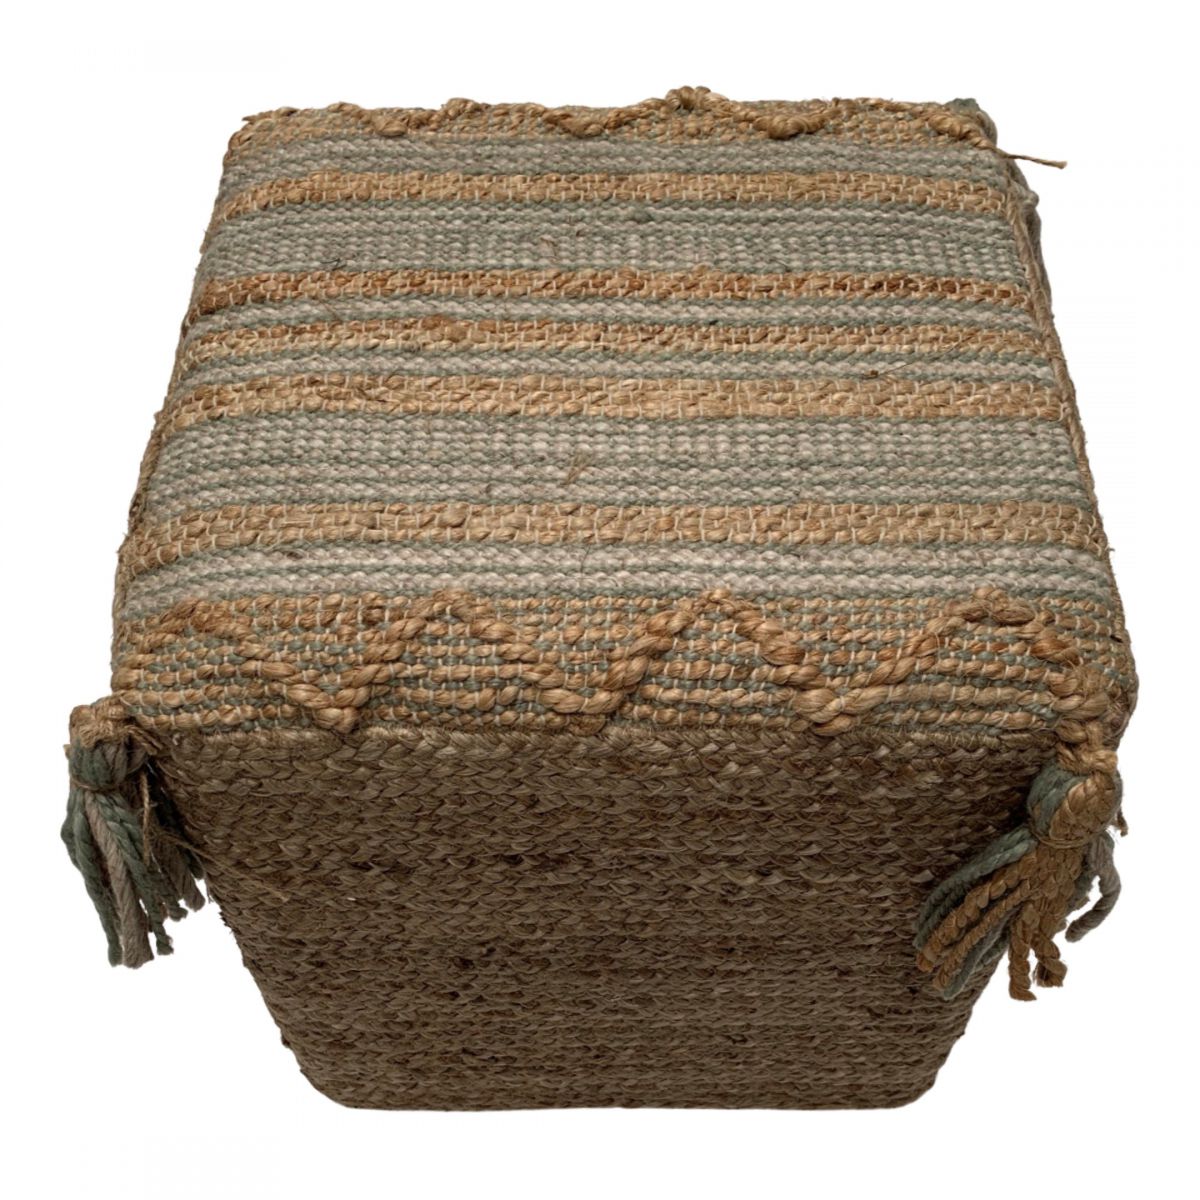 pouf square woven jute wool pet cotton sage white 40x40xhg40cm